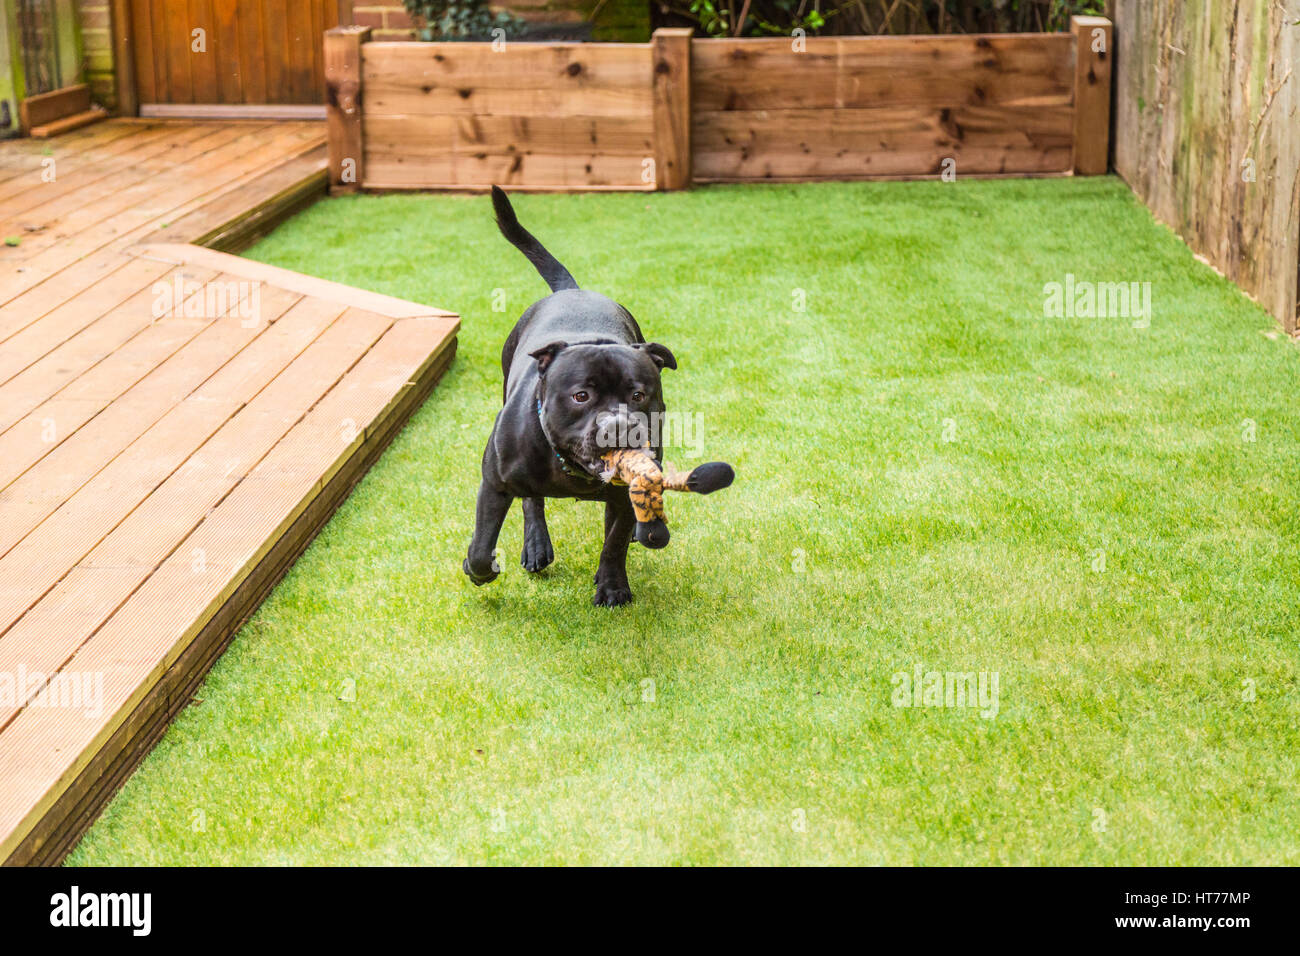 Staffordshire Bull Terrier perro negro corriendo y jugando en el césped artificial de entablado en un patio o jardín residencial. Él tiene un juguete blando tigre en hi Foto de stock